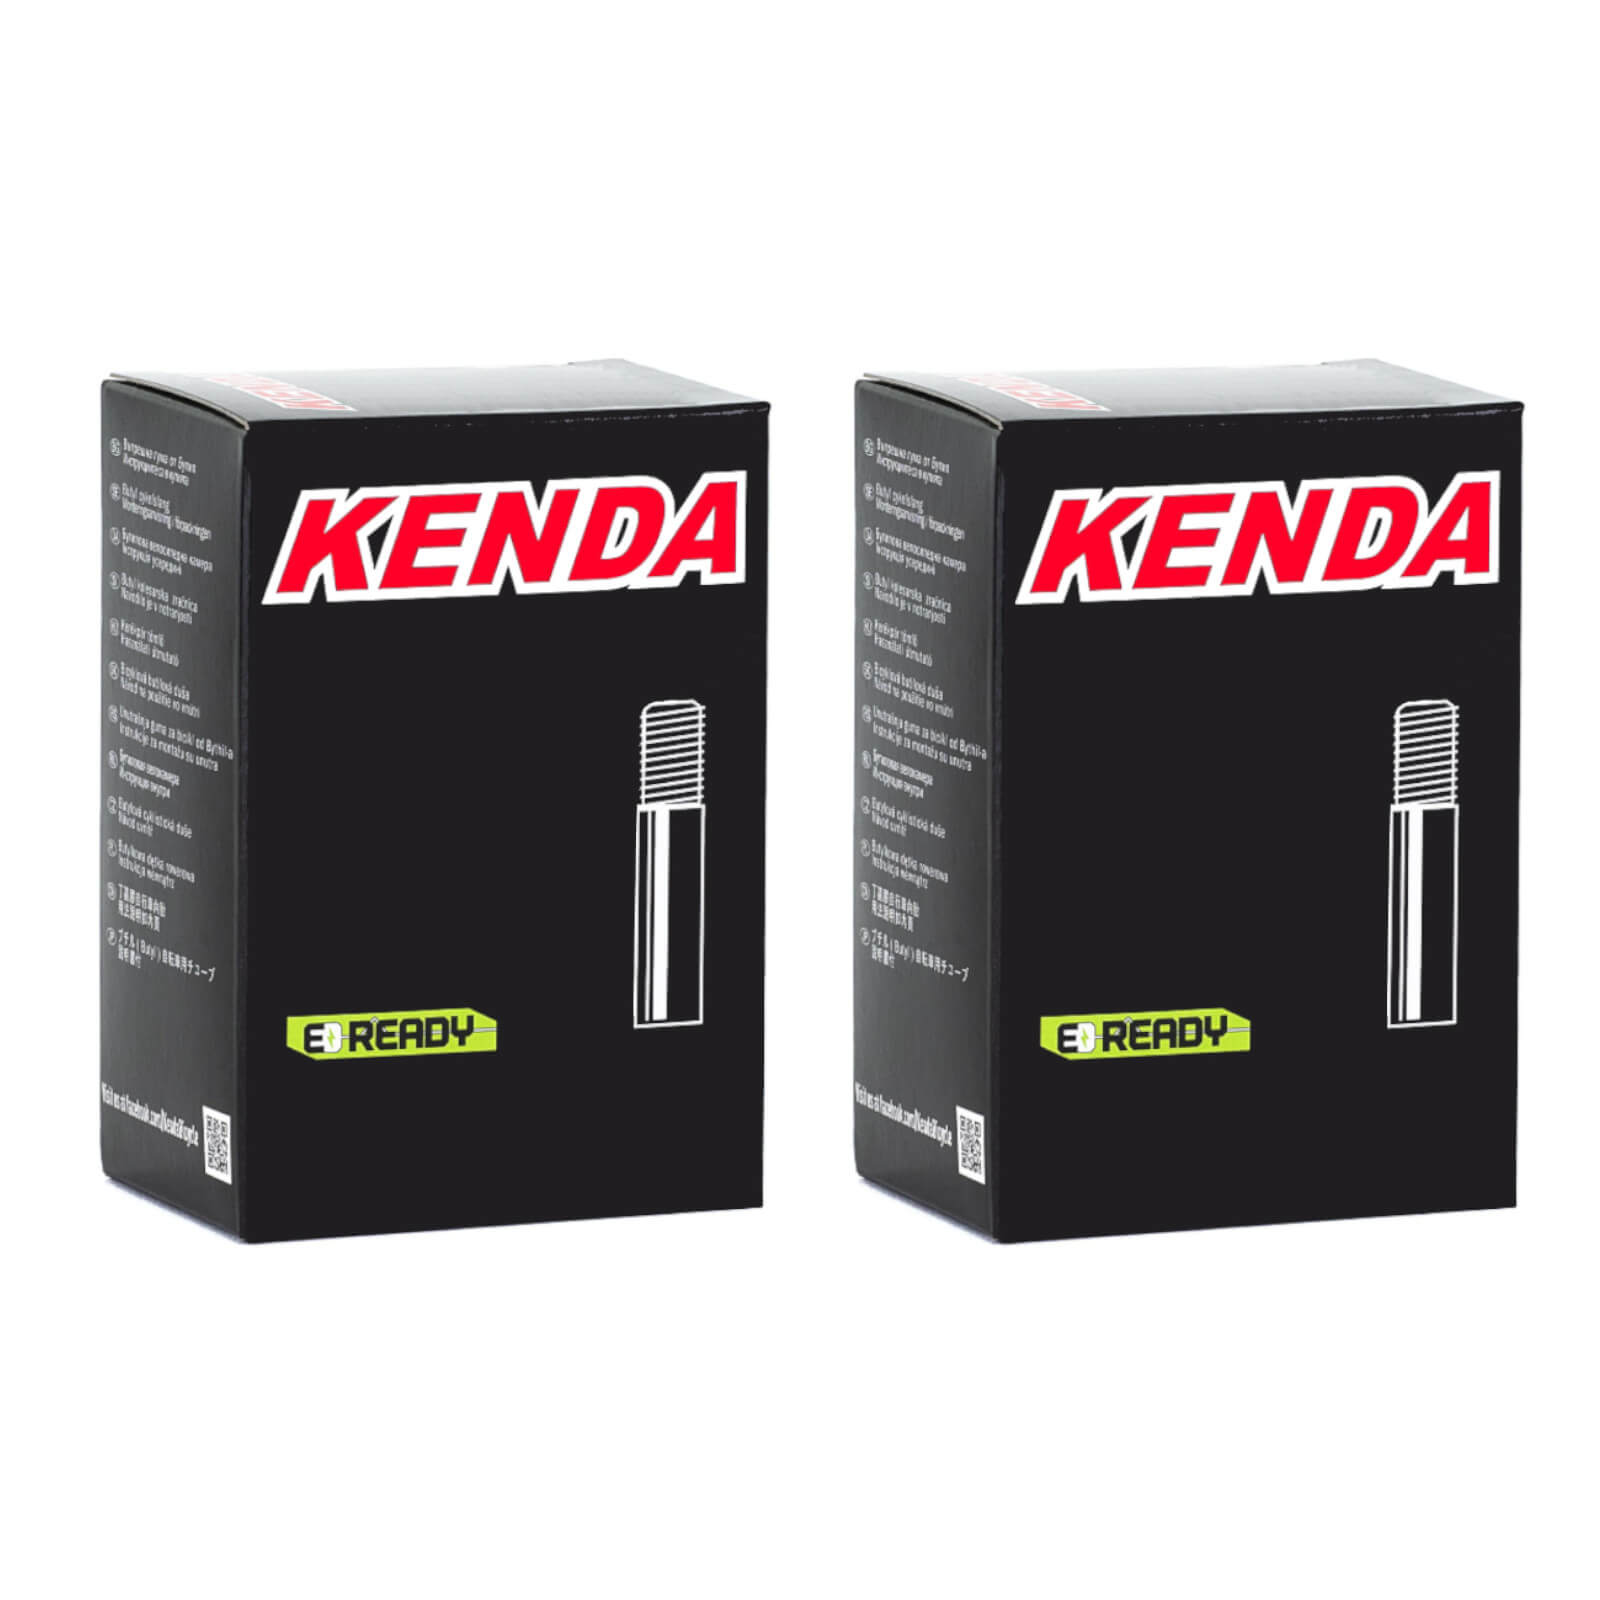 Kenda 24x2.0-2.4" 24 Inch Schrader Valve Bike Inner Tube Pack of 2